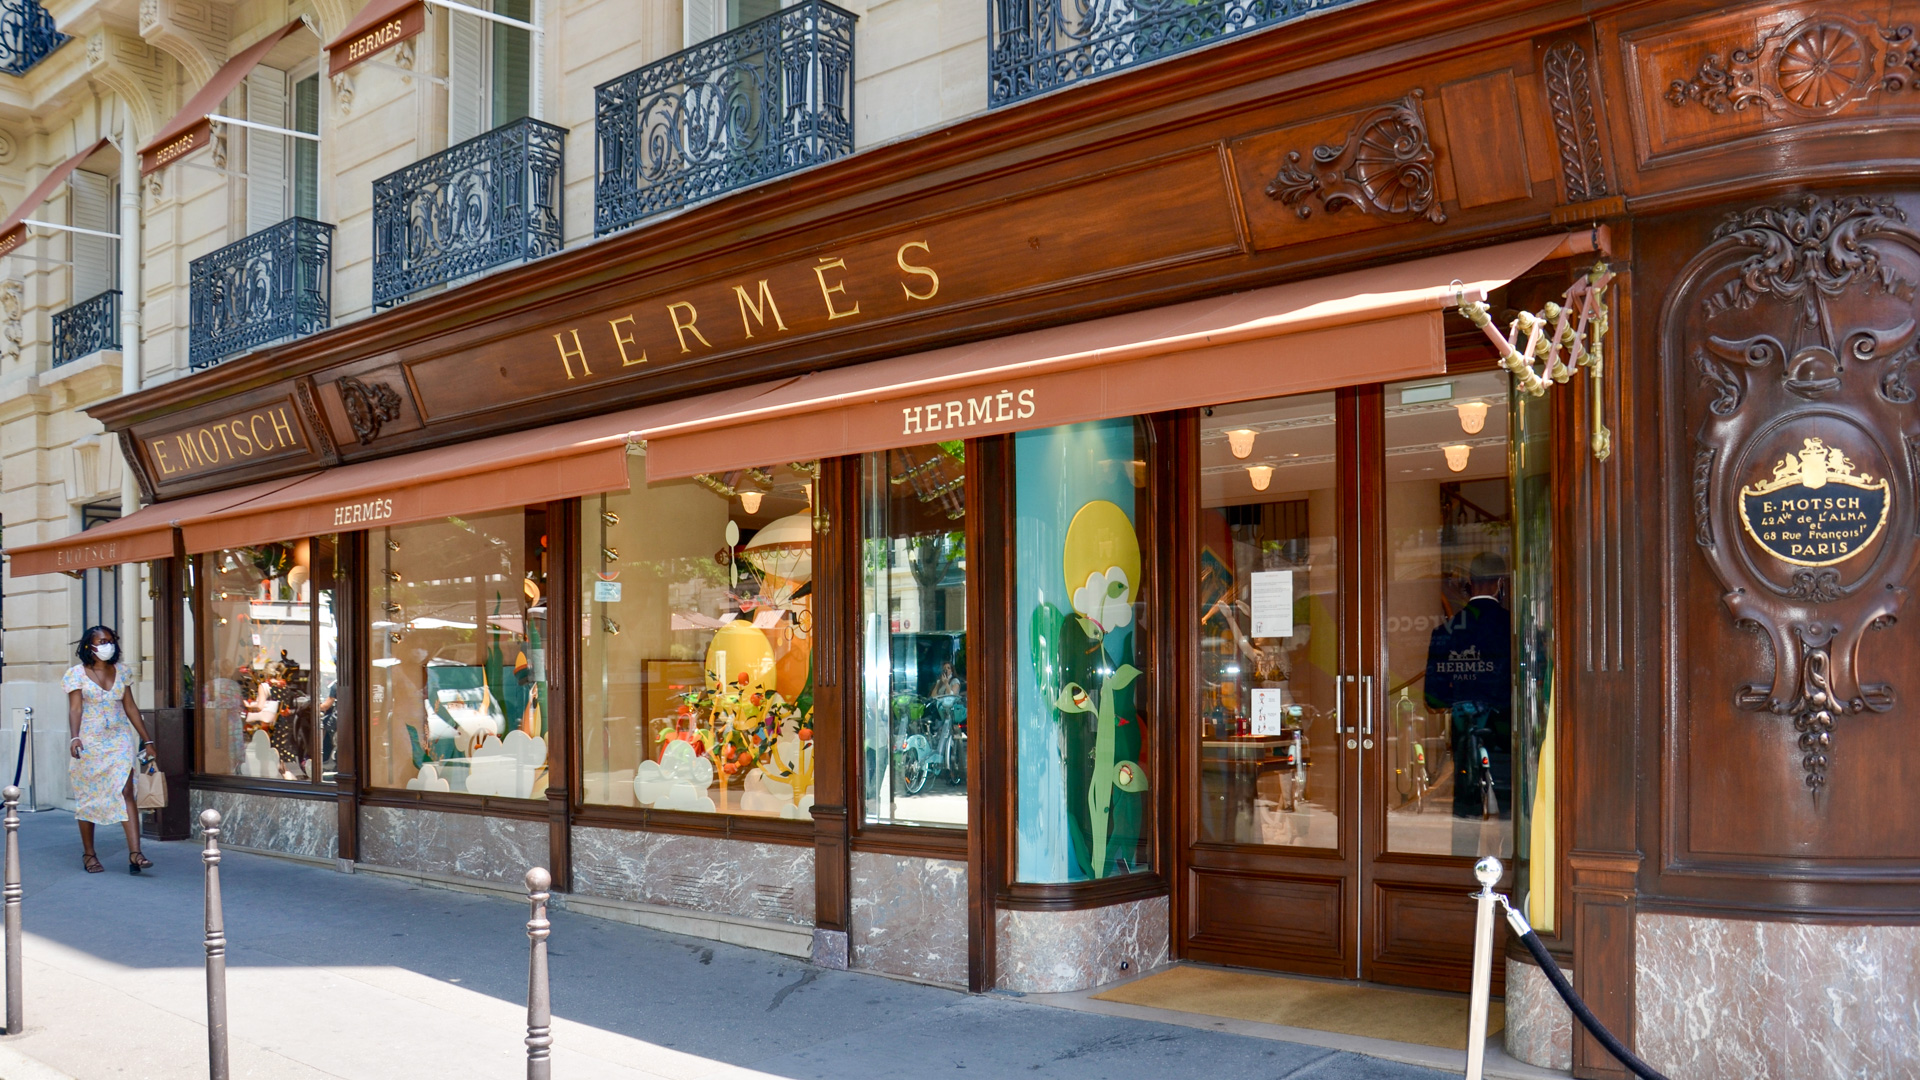 Agencement de la devanture en bois d'une boutique Hermès